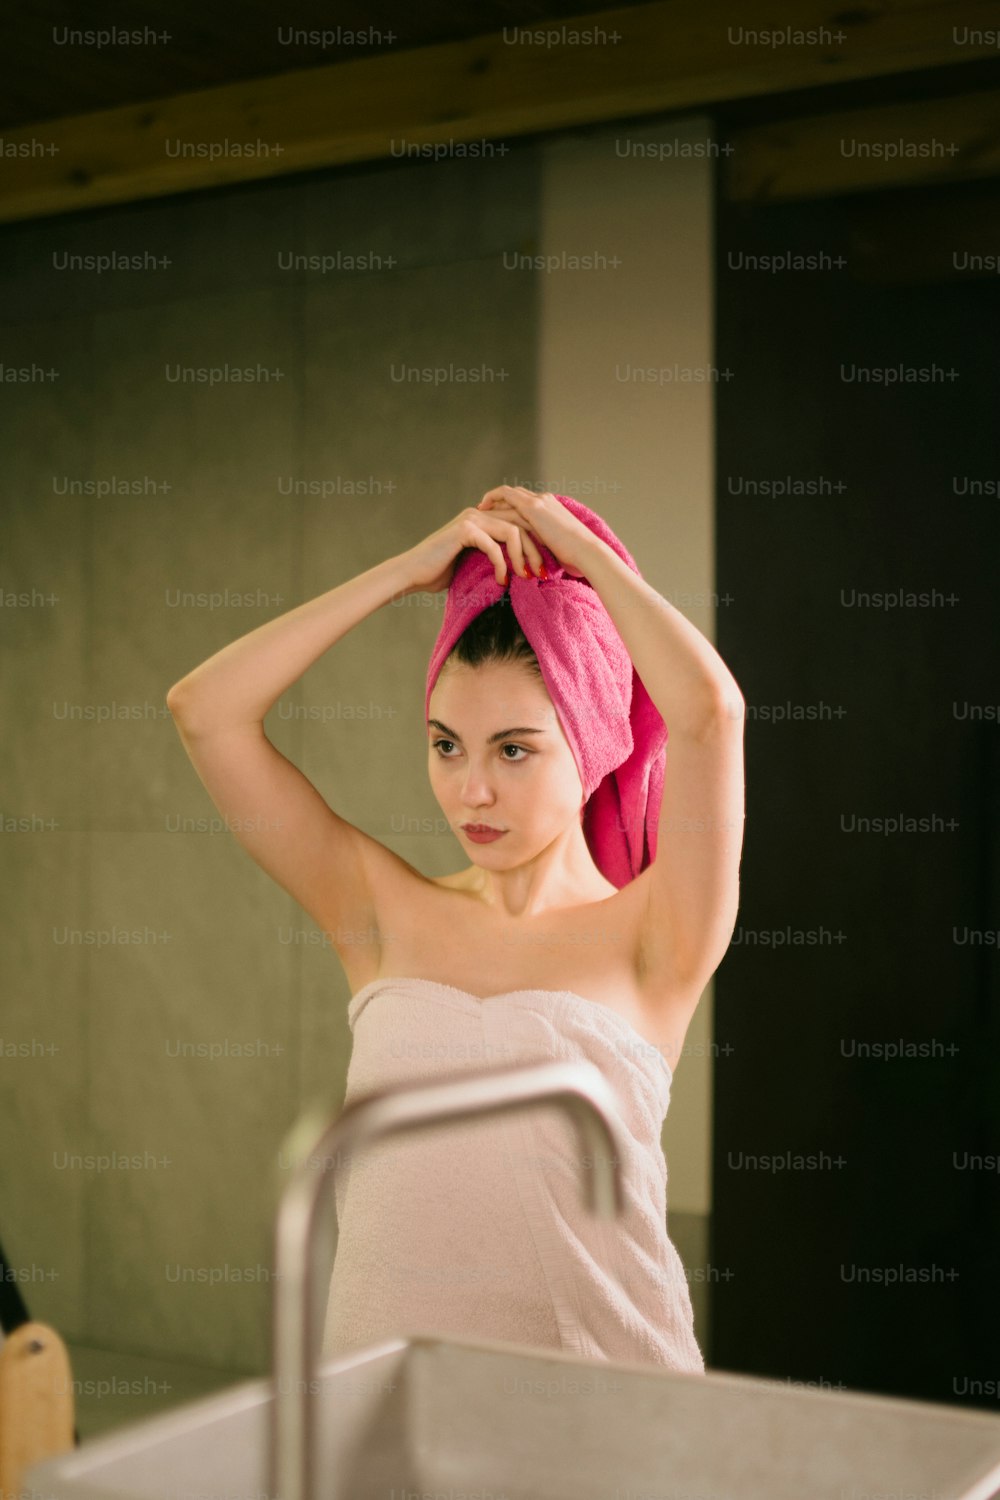 Eine Frau mit einem Handtuch auf dem Kopf in einem Badezimmer